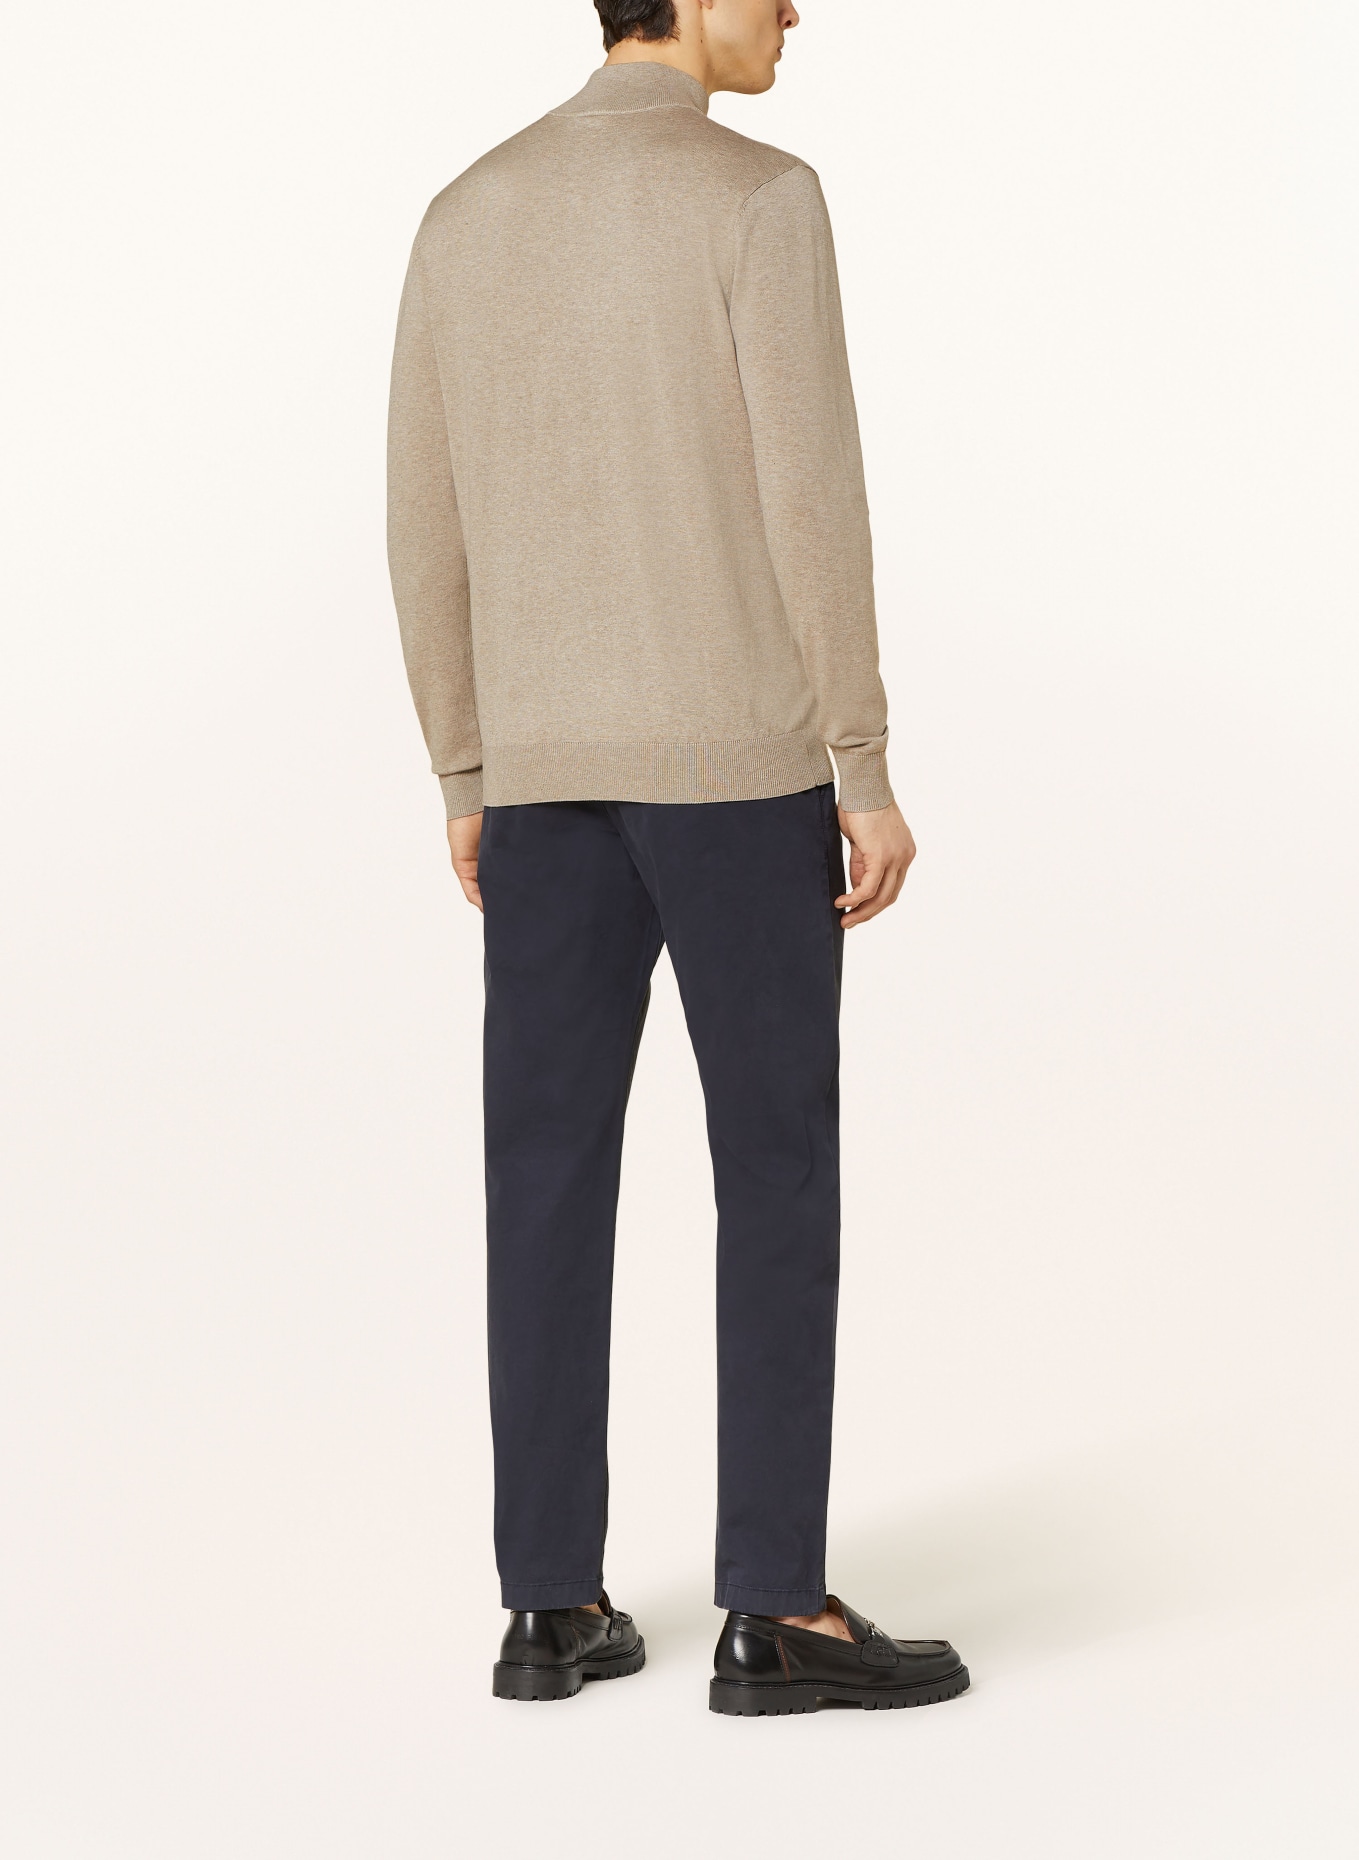 PROFUOMO Half-zip sweater, Color: BEIGE (Image 3)